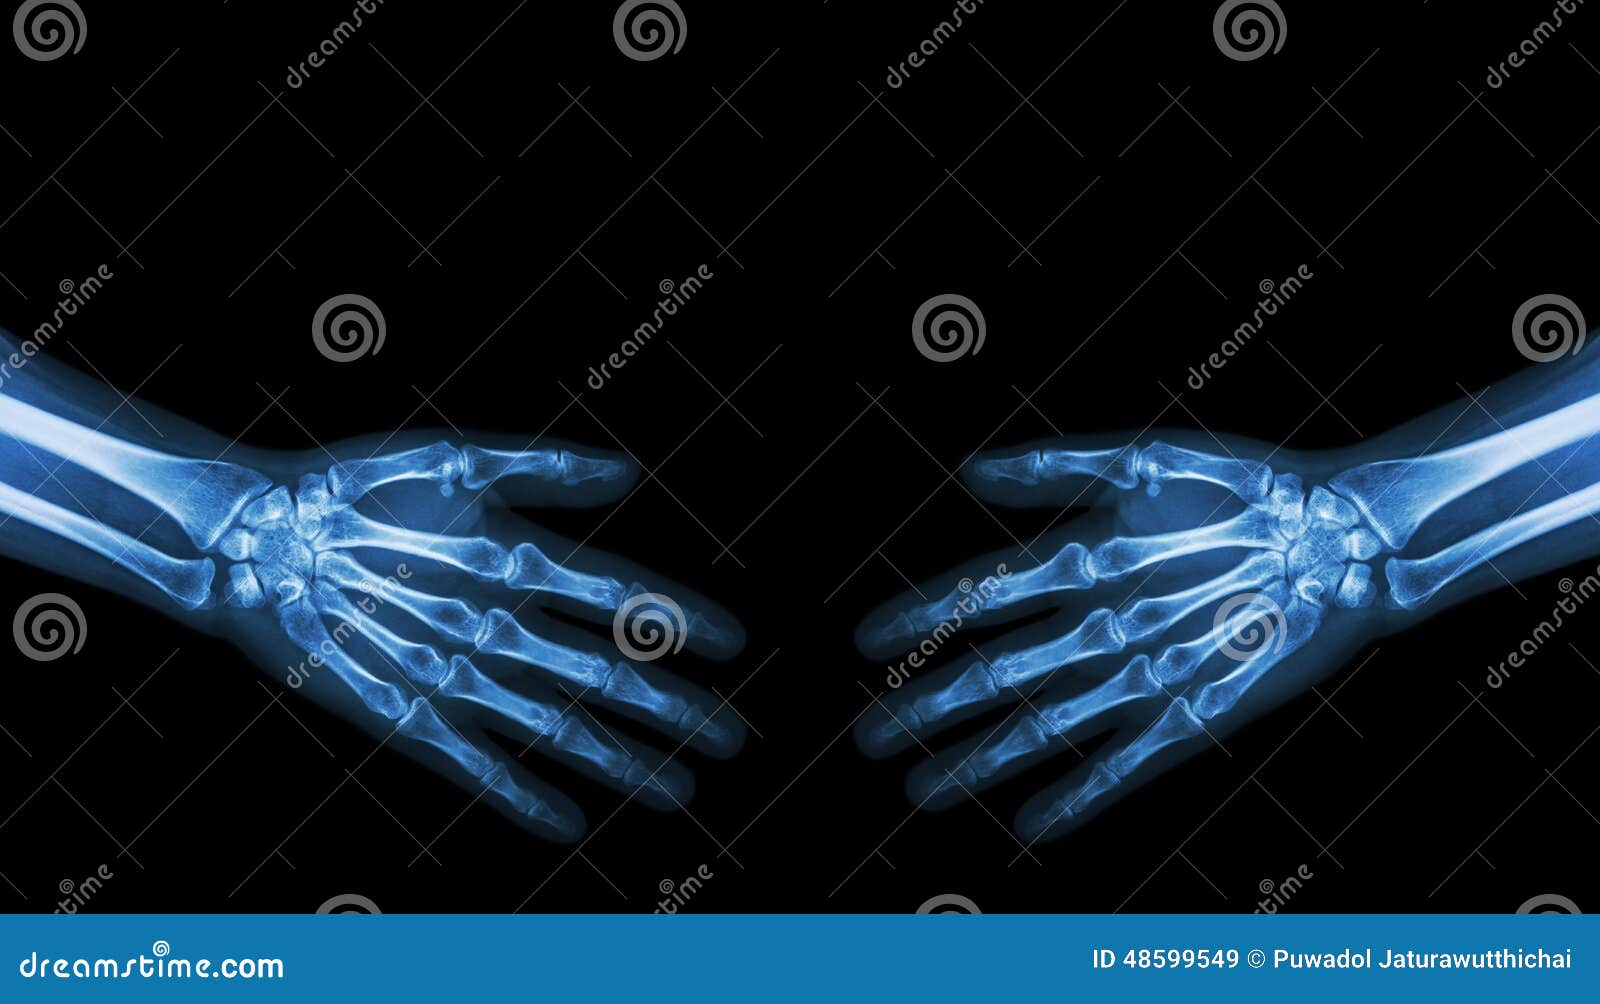 Highen för händer 3d framför upplösningsshake Normala mänskliga händer för röntgenstråle (tomt område på övresidan). Highen för händer 3d framför upplösningsshake Normala mänskliga händer för röntgenstråle (tomt område på övresidan)